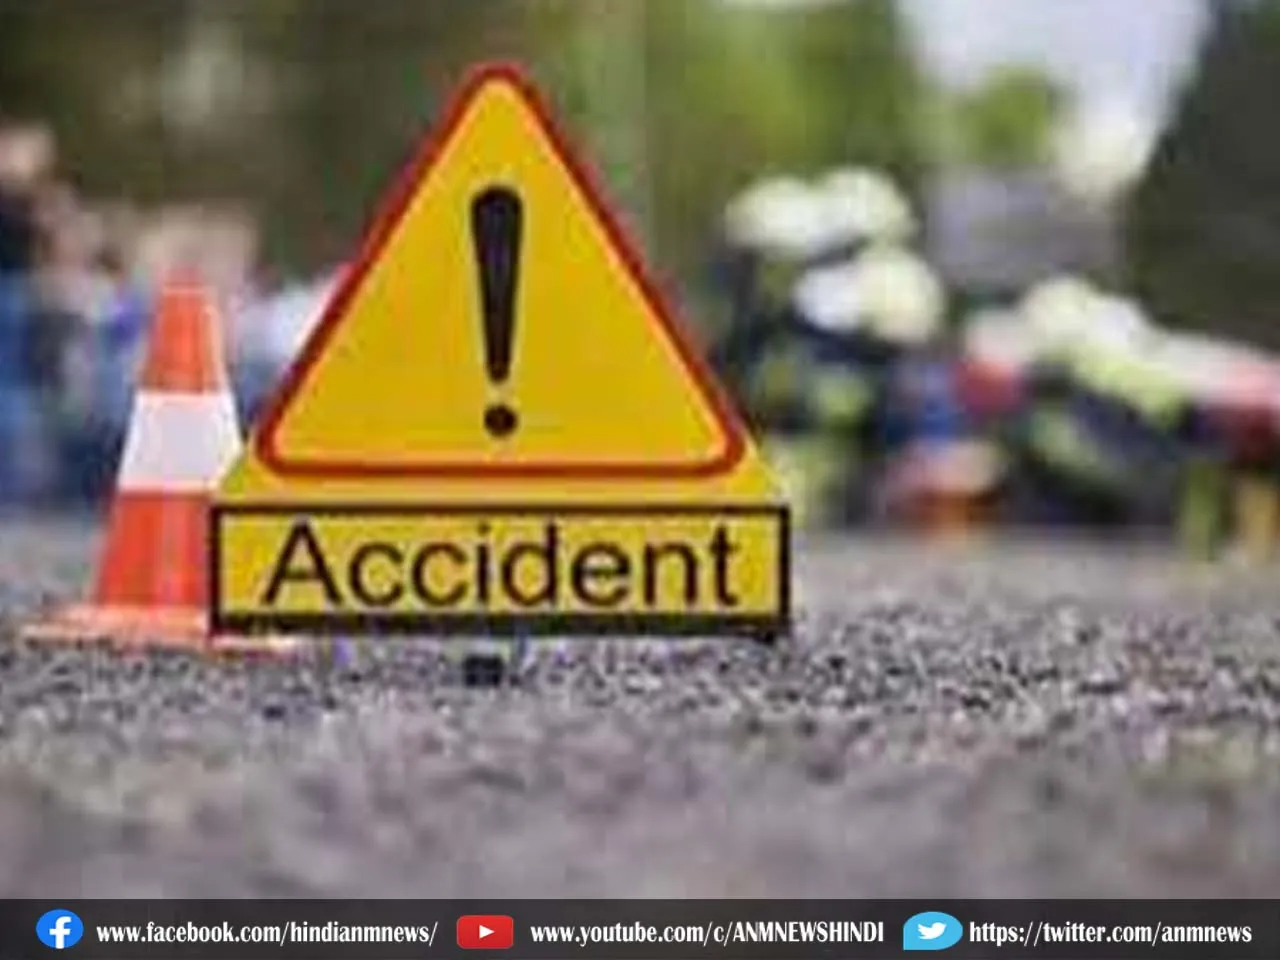 Accident : बस दुर्घटना में 4 लोगों की मौत